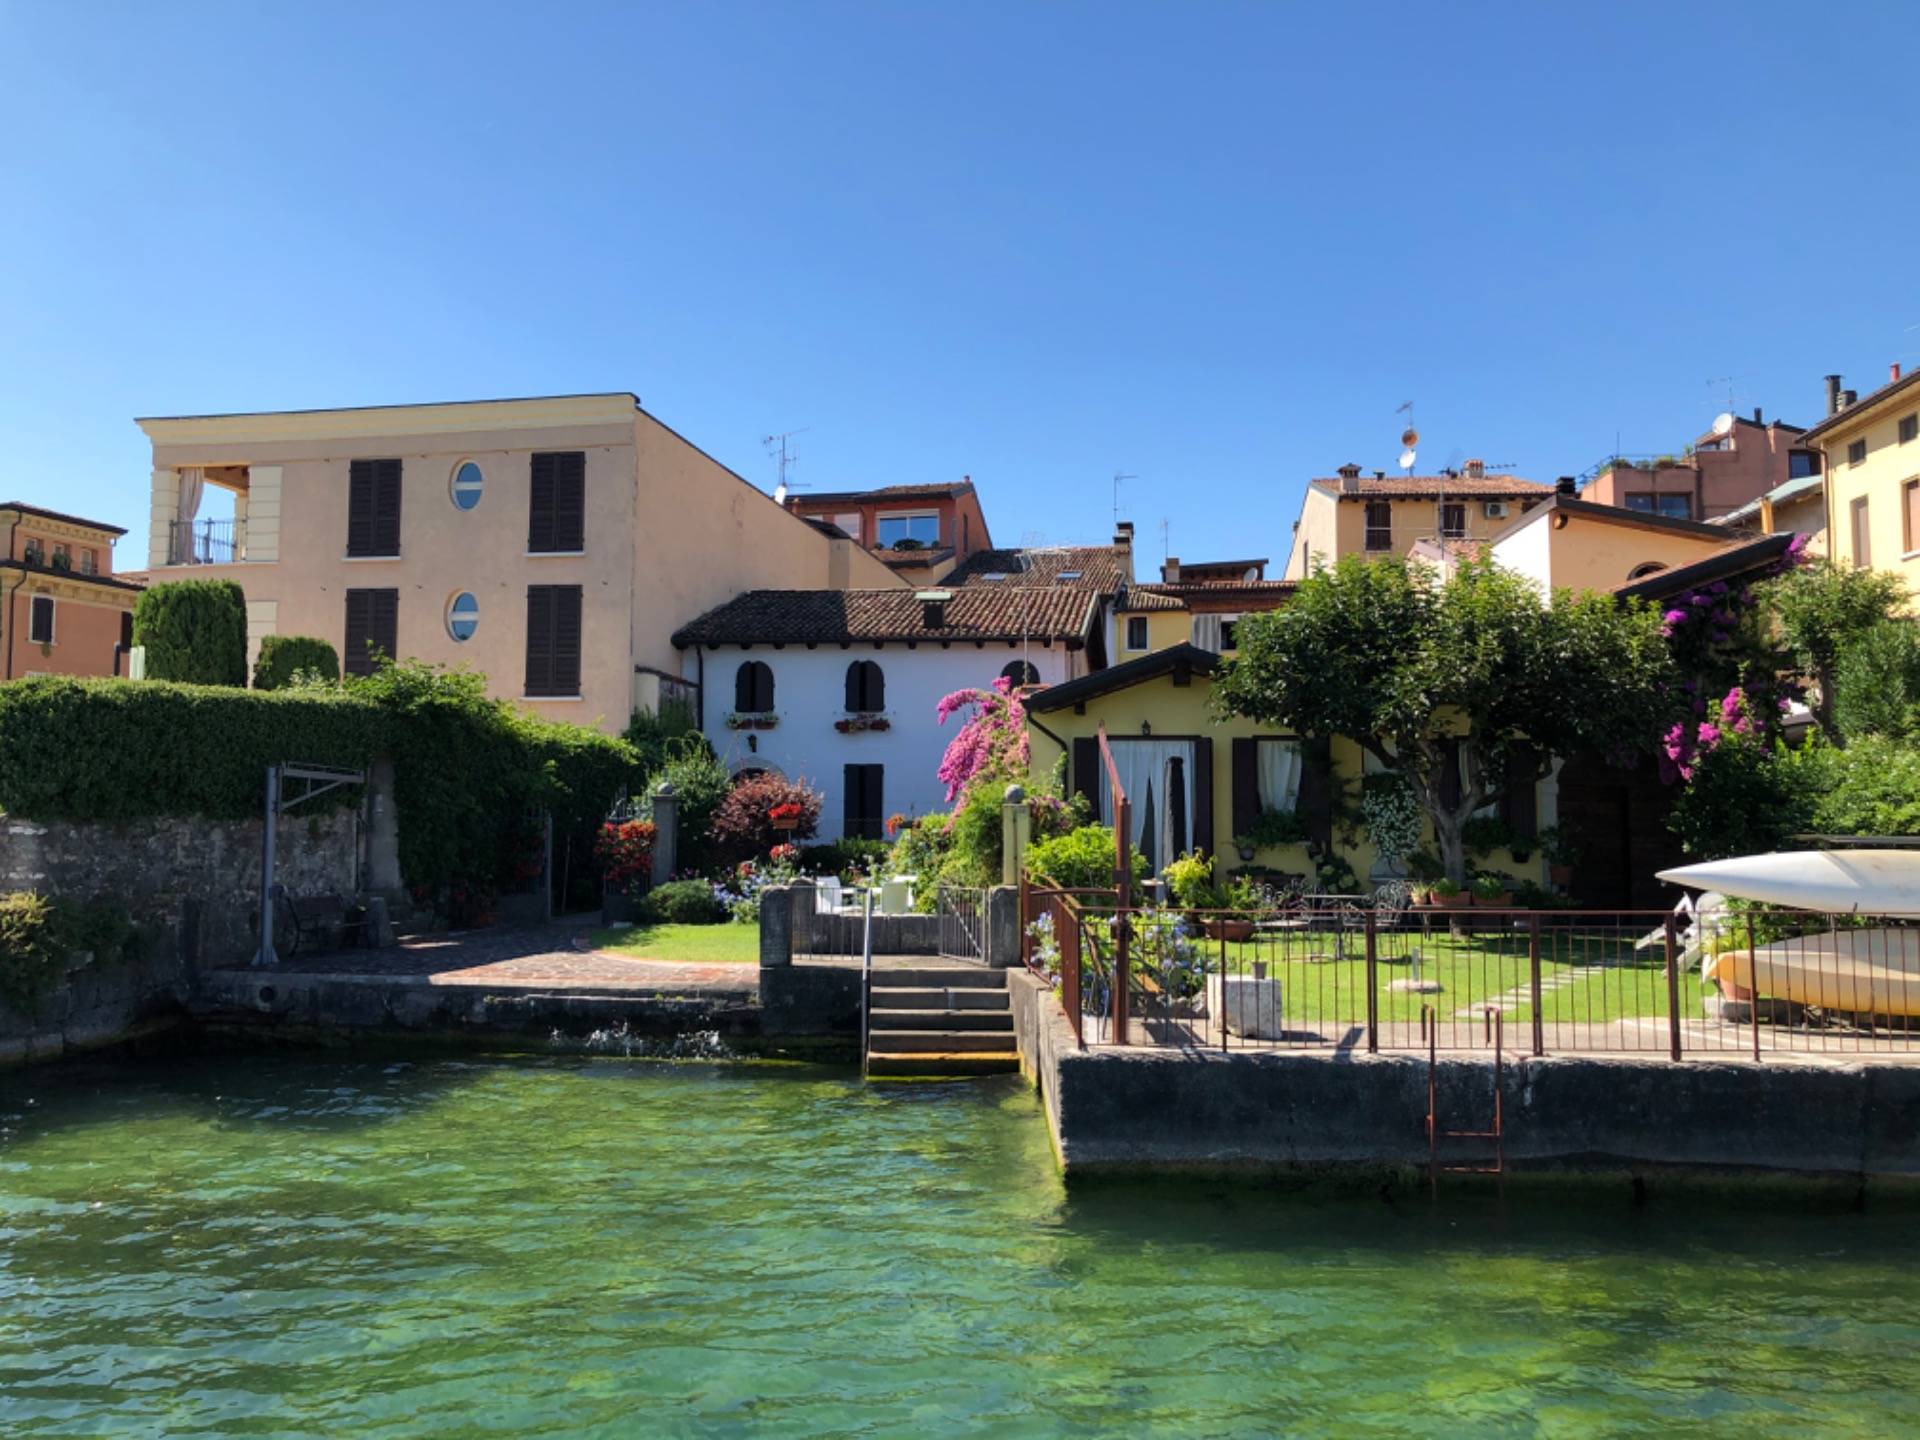 Salo, Lago di Garda ~ Home to a famous violin maker